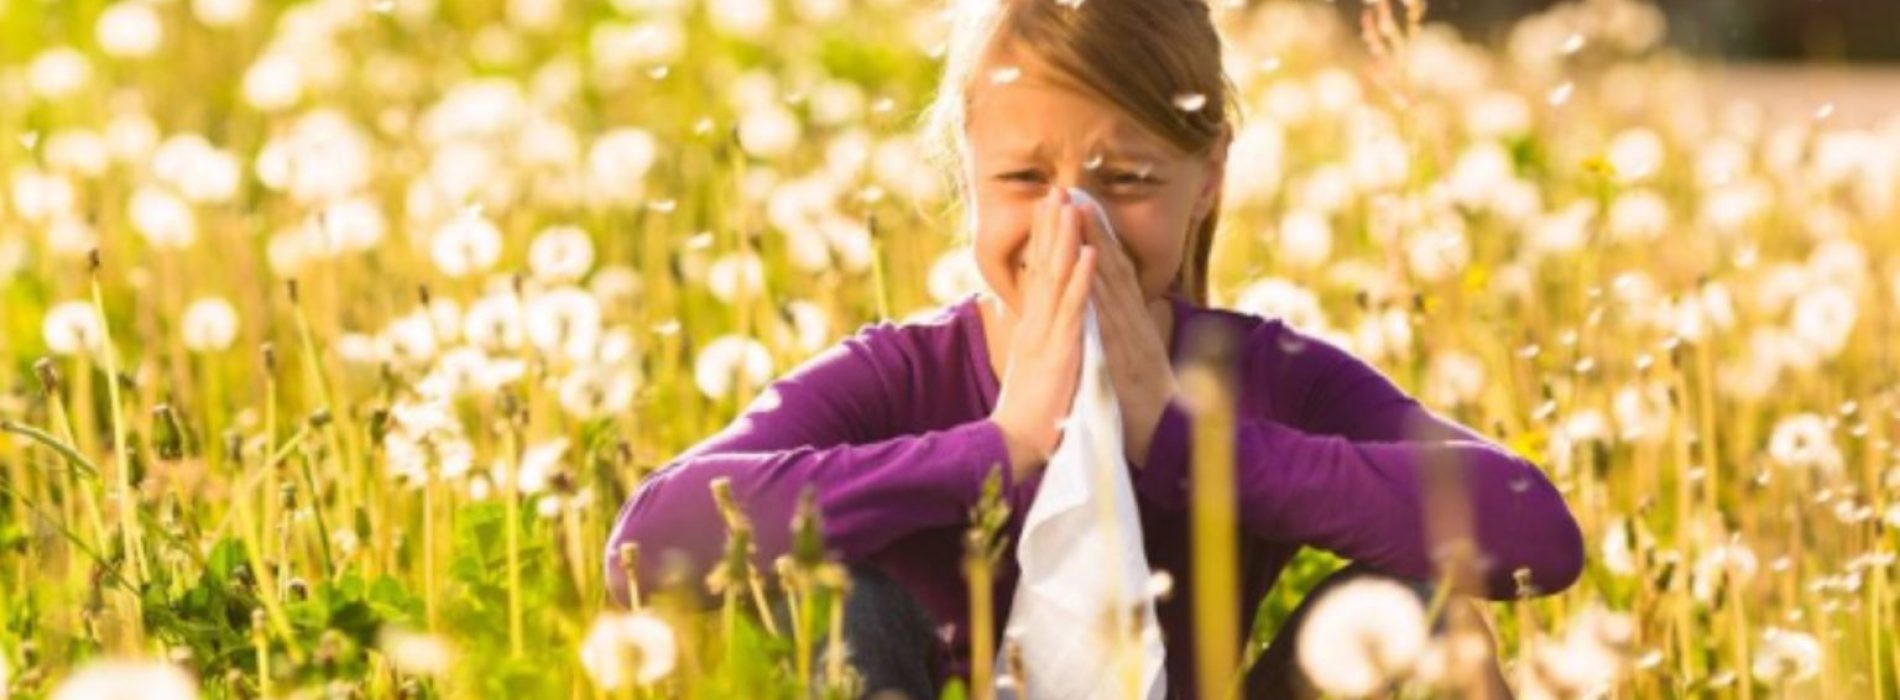 Seizoensgebonden allergieën? Deze 6 voedingsmiddelen kunnen helpen